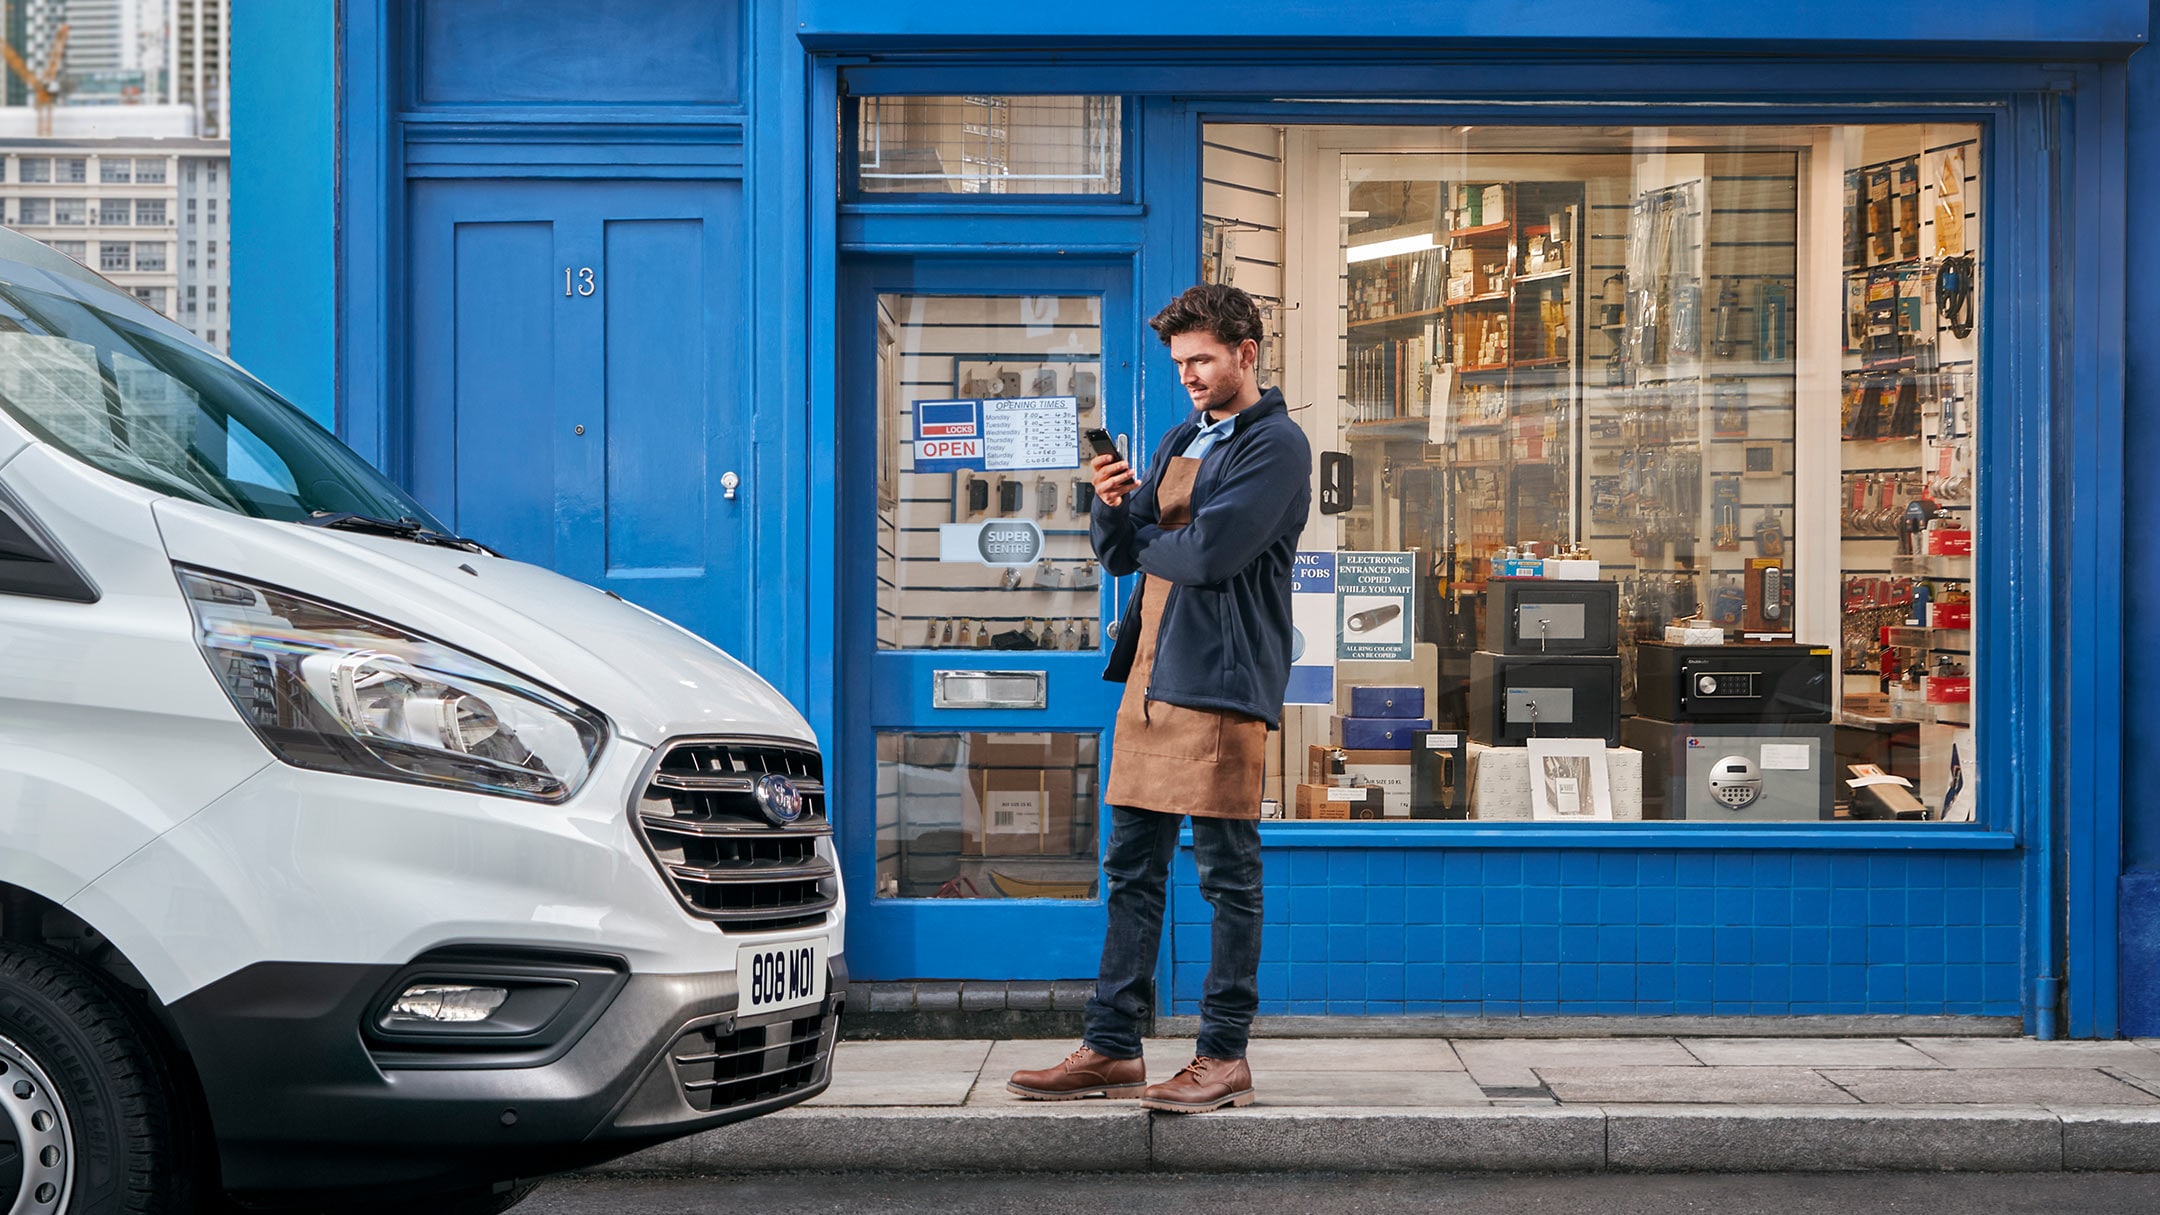 Uomo davanti a un negozio accanto a un veicolo aziendale con il telefono cellulare in mano